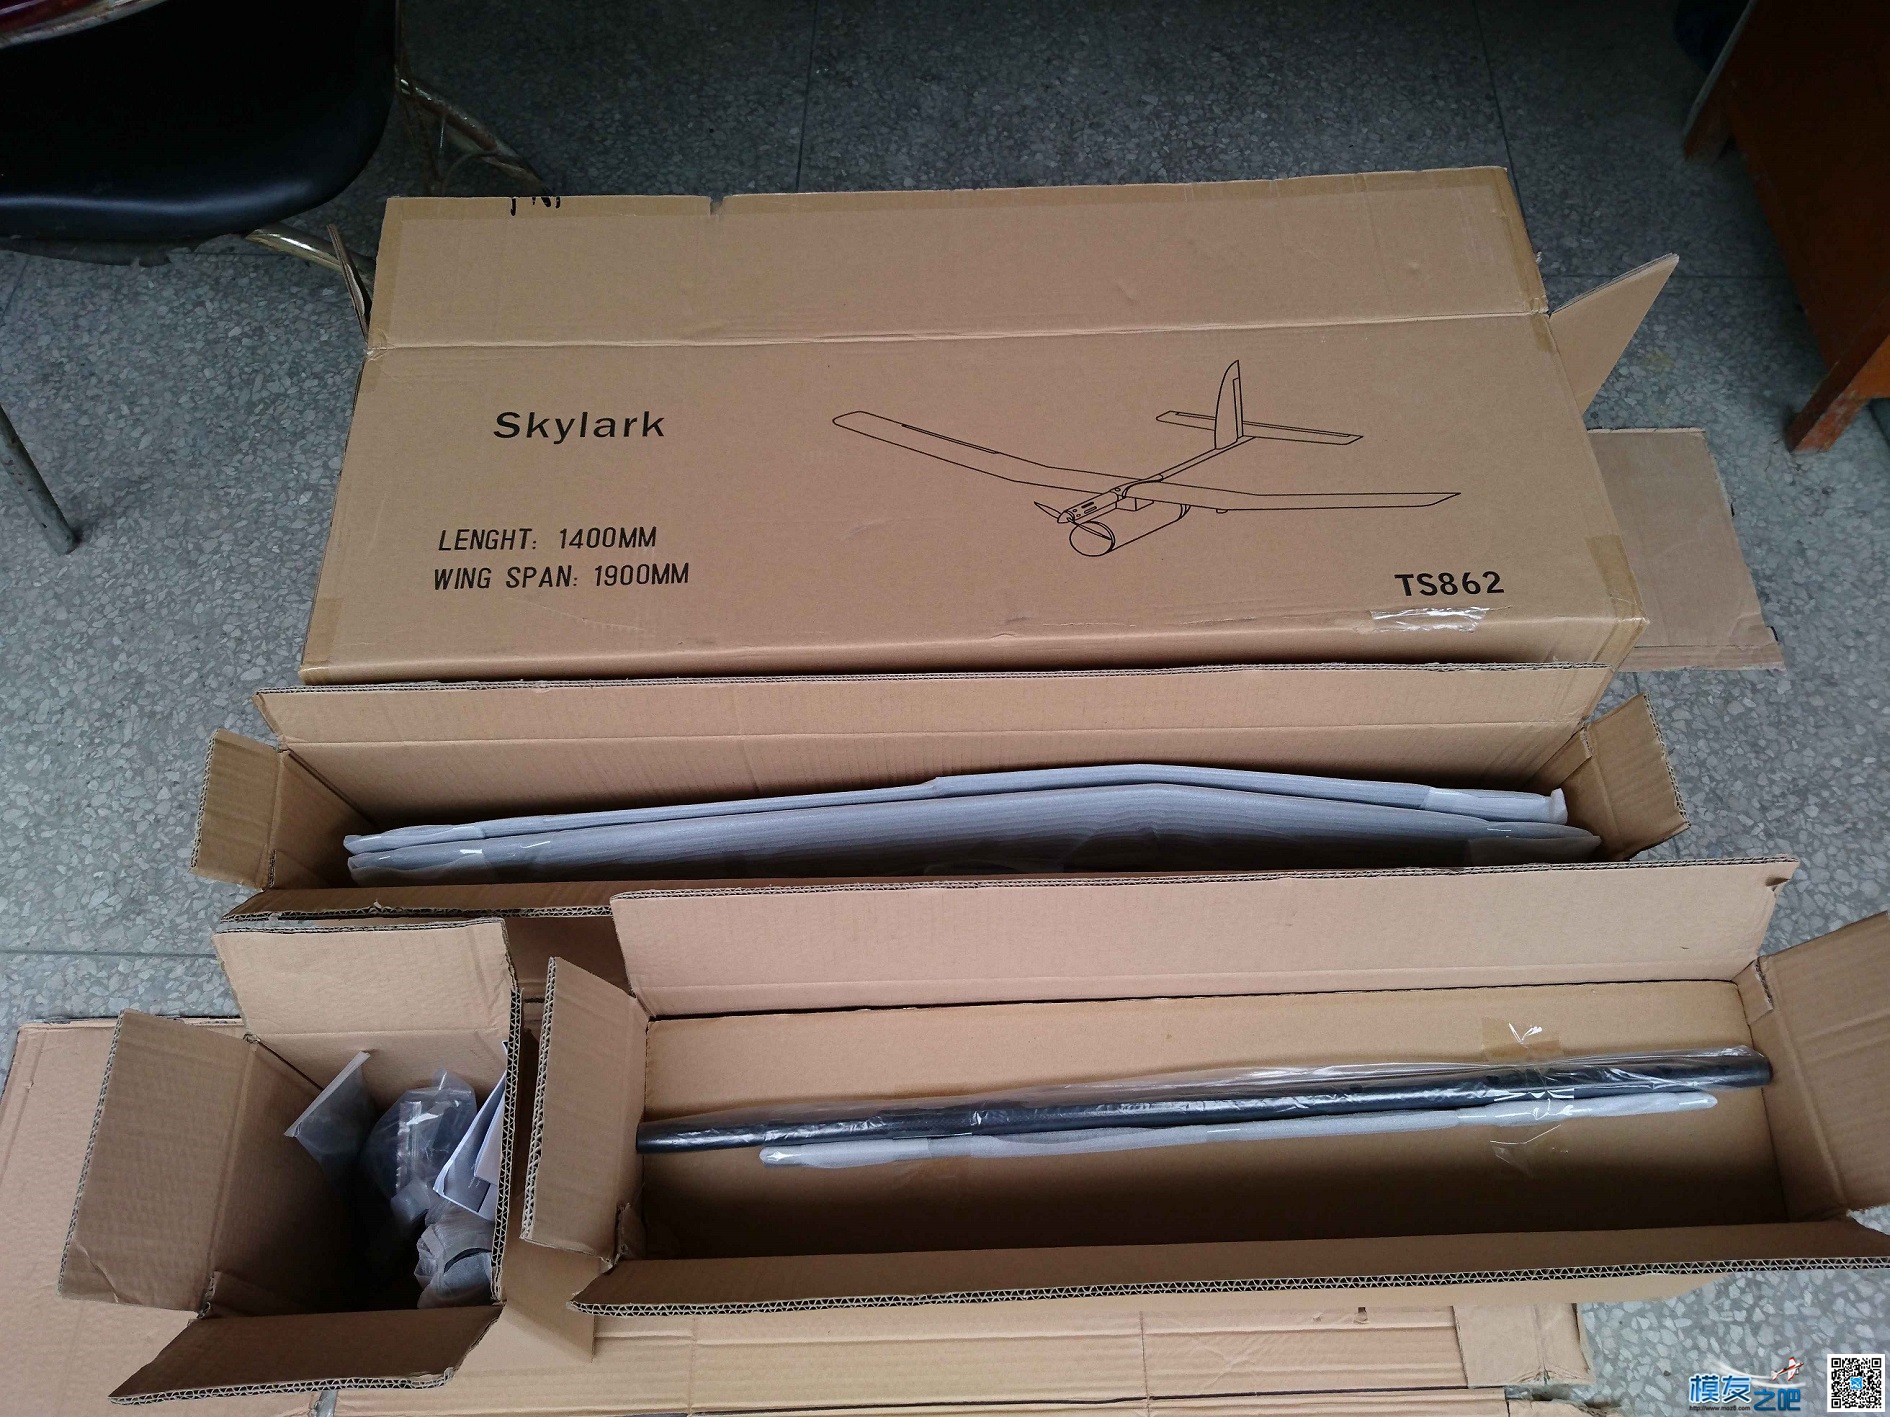 天盛模型国内首款机型 Skylark 全新概念固定翼FPV载机 开箱贴 无人机,模型,固定翼,舵机,电调 作者:模友之吧 4287 